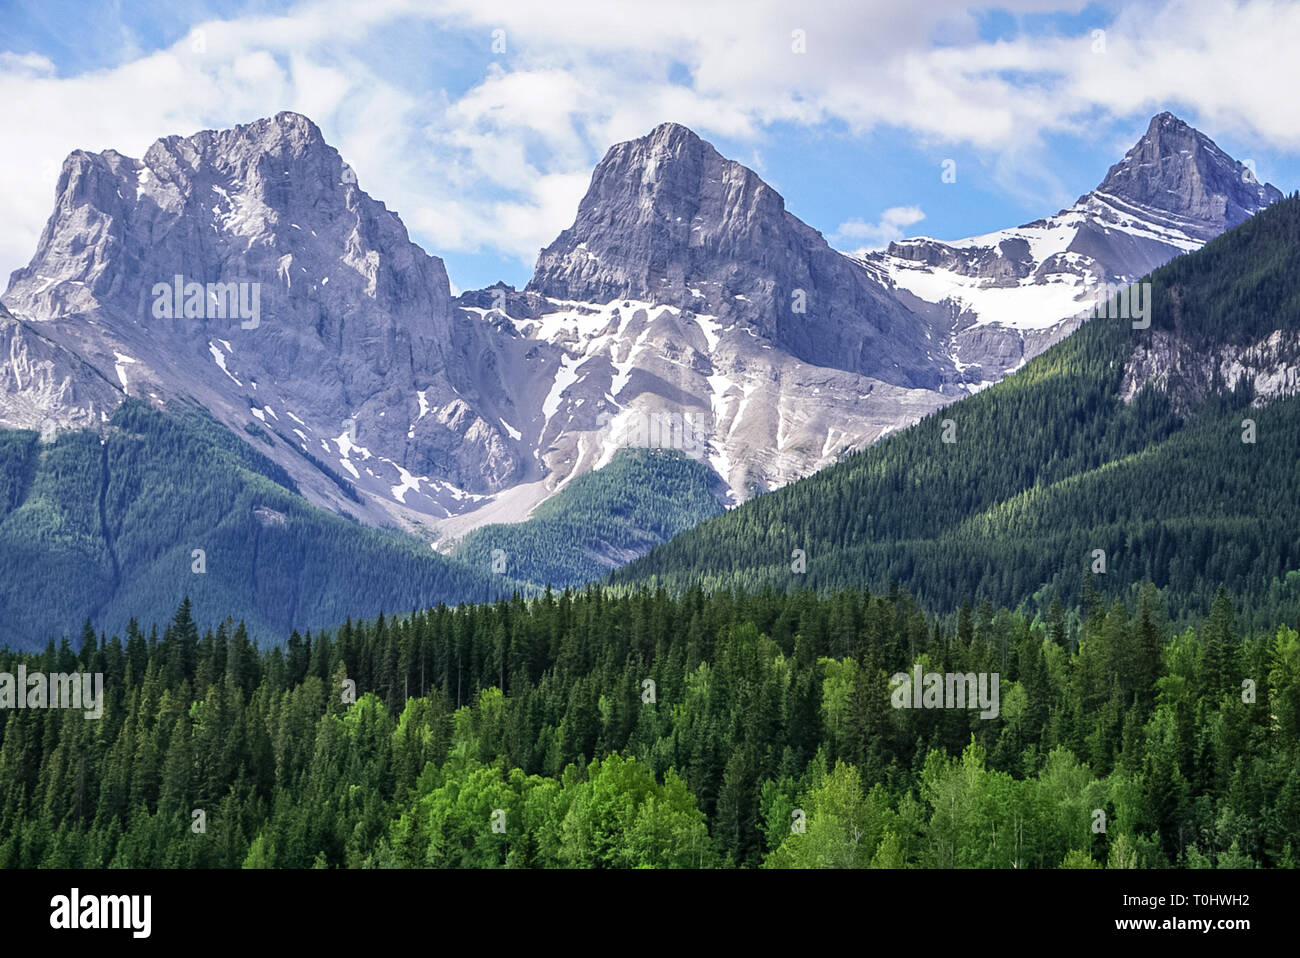 Una vista de las Tres Hermanas montaña mirando hacia arriba desde el sendero. Foto de stock